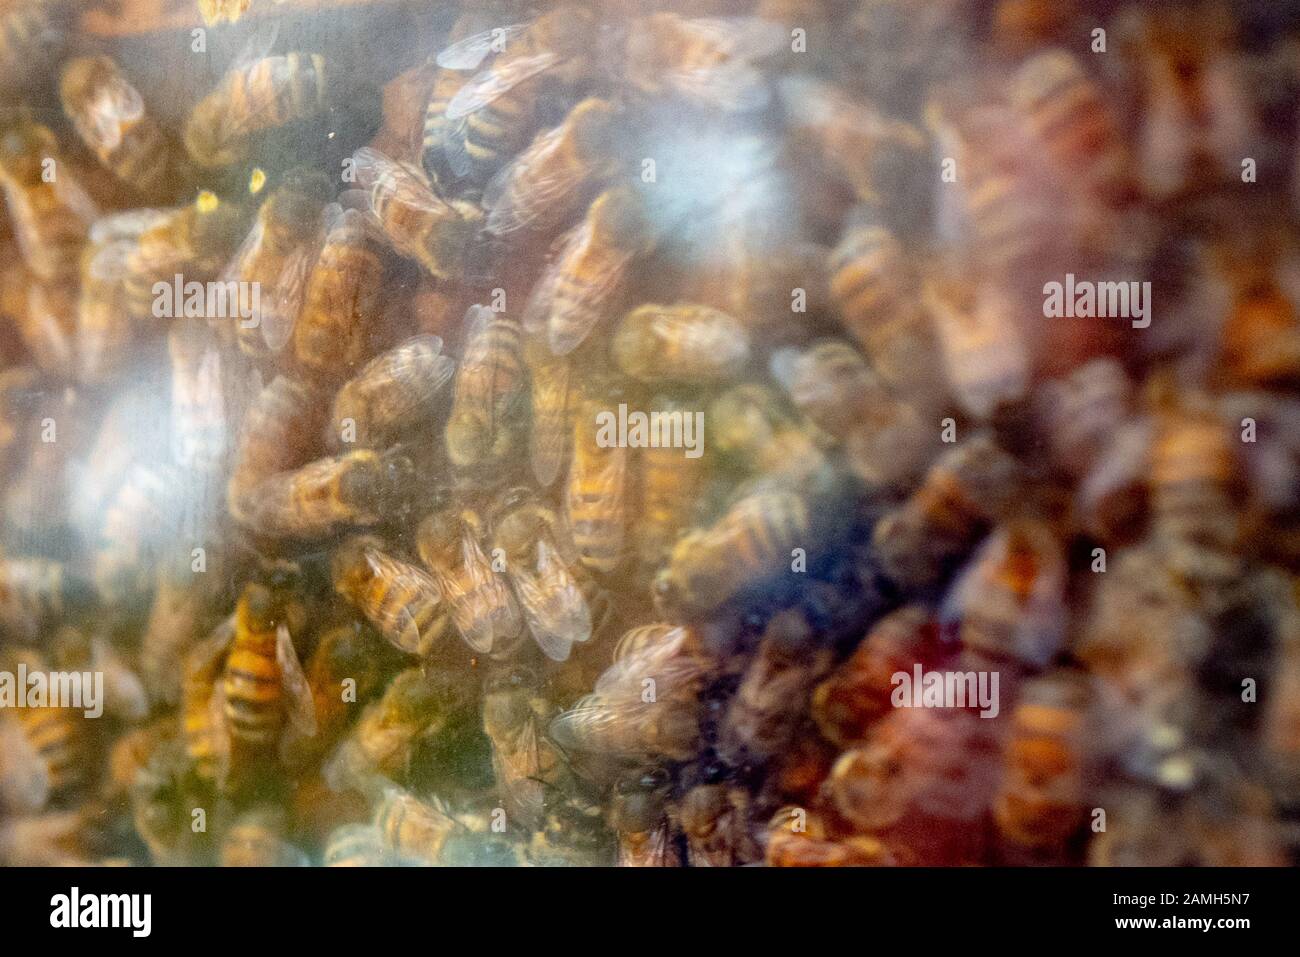 Primo piano delle api mellifere in un alveare a Walnut Creek, California, dicembre 2019. Le popolazioni di api mellifere sono diminuite negli Stati Uniti, portando a preoccupazioni circa la continua impollinazione di molte colture dipendenti dalle api. () Foto Stock